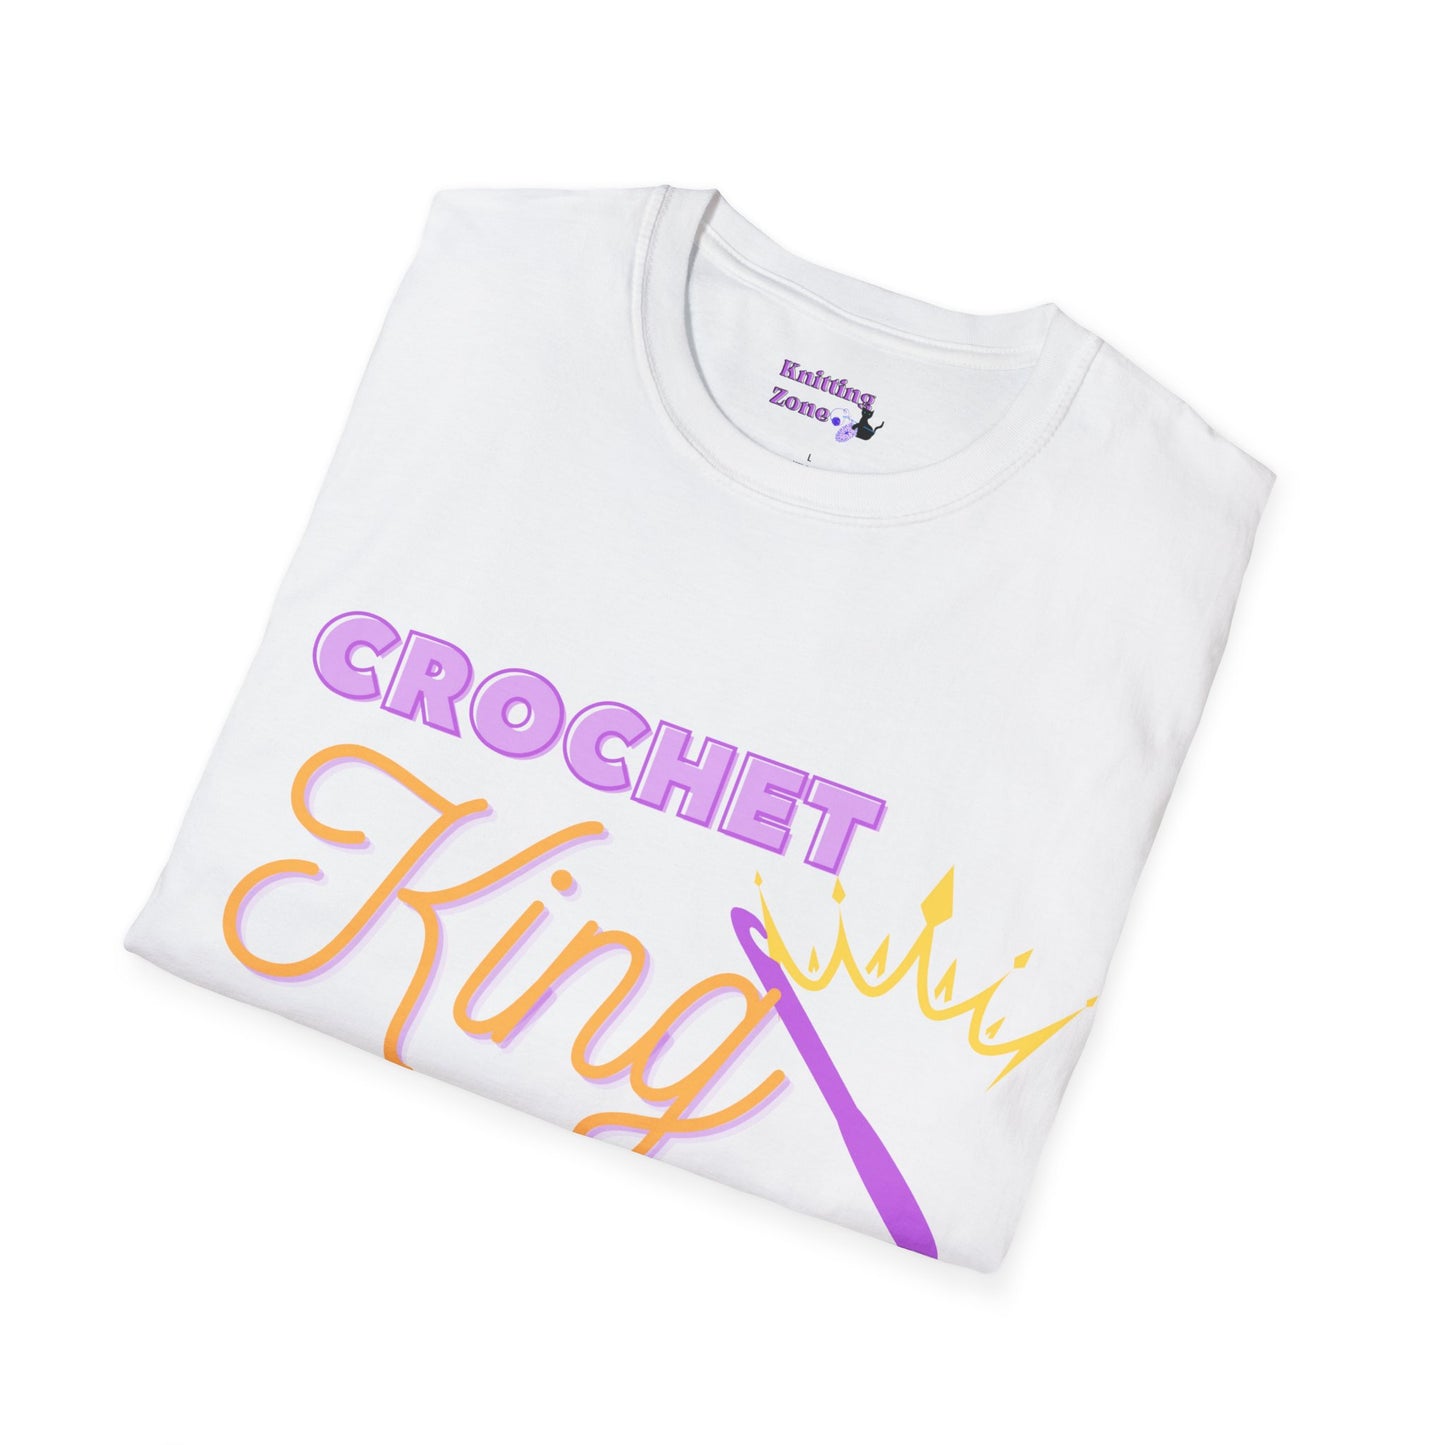 Crochet King Unisex T Shirt